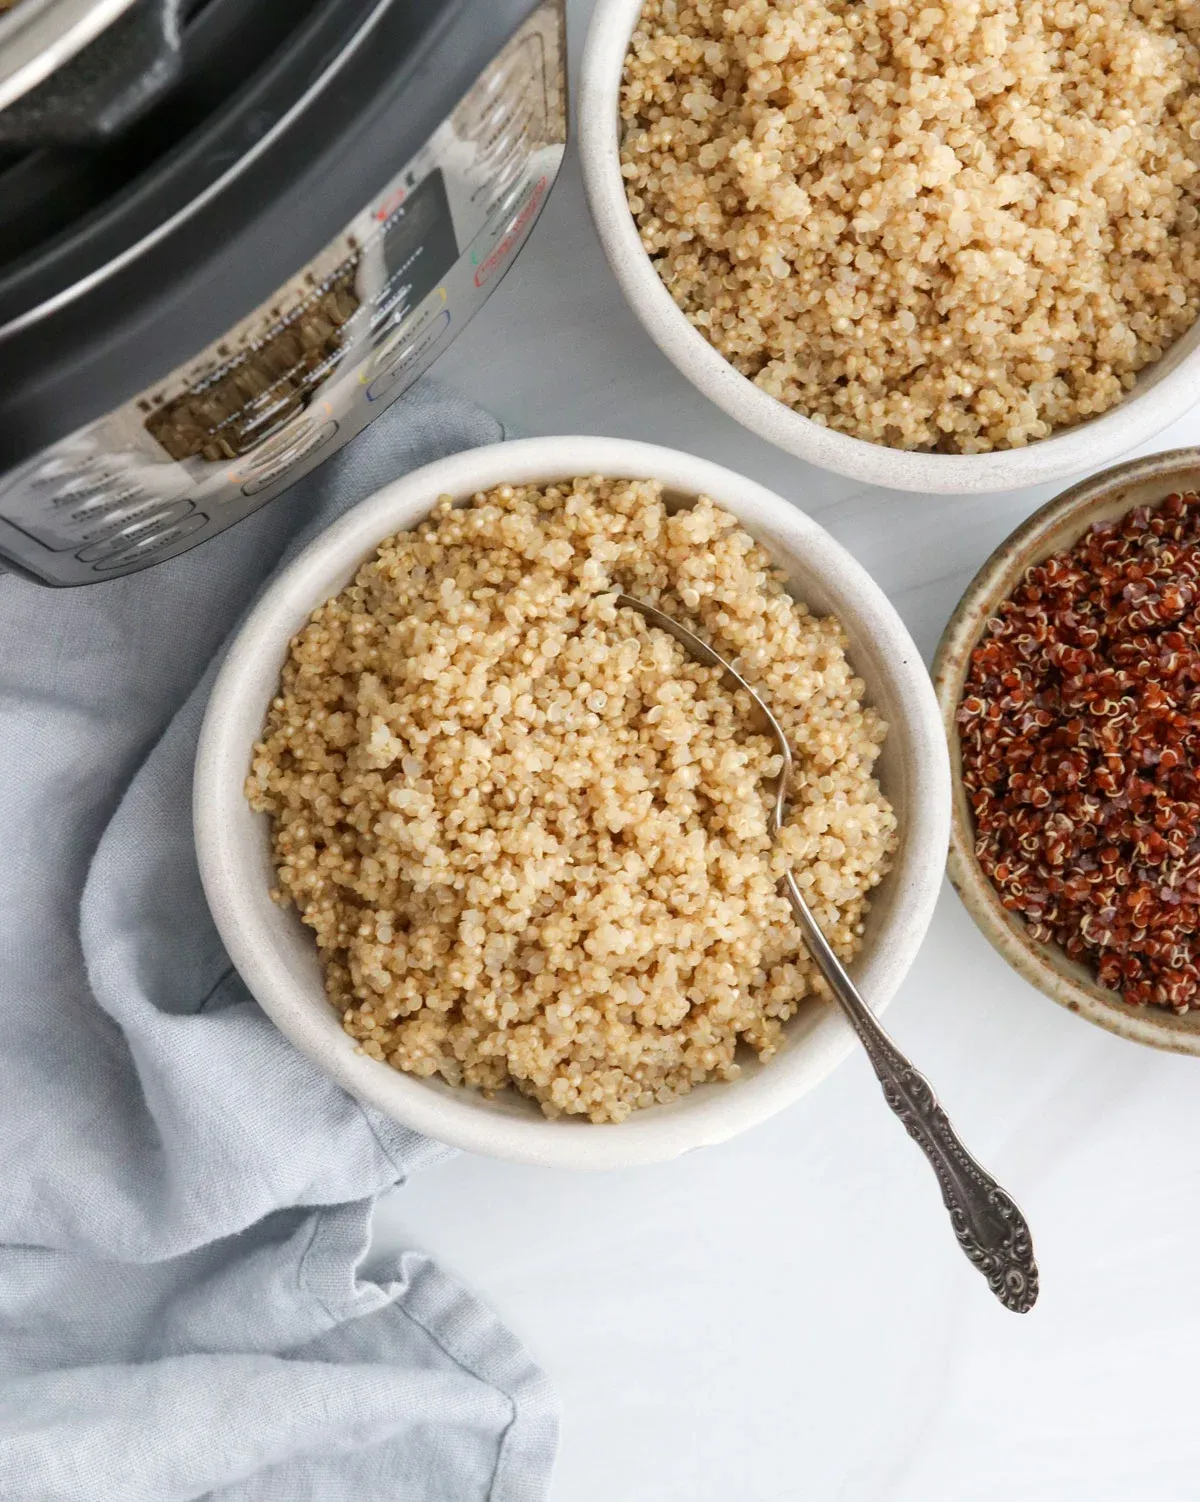 quinoa in schüsseln haferflocken-alternativen zu frühstück